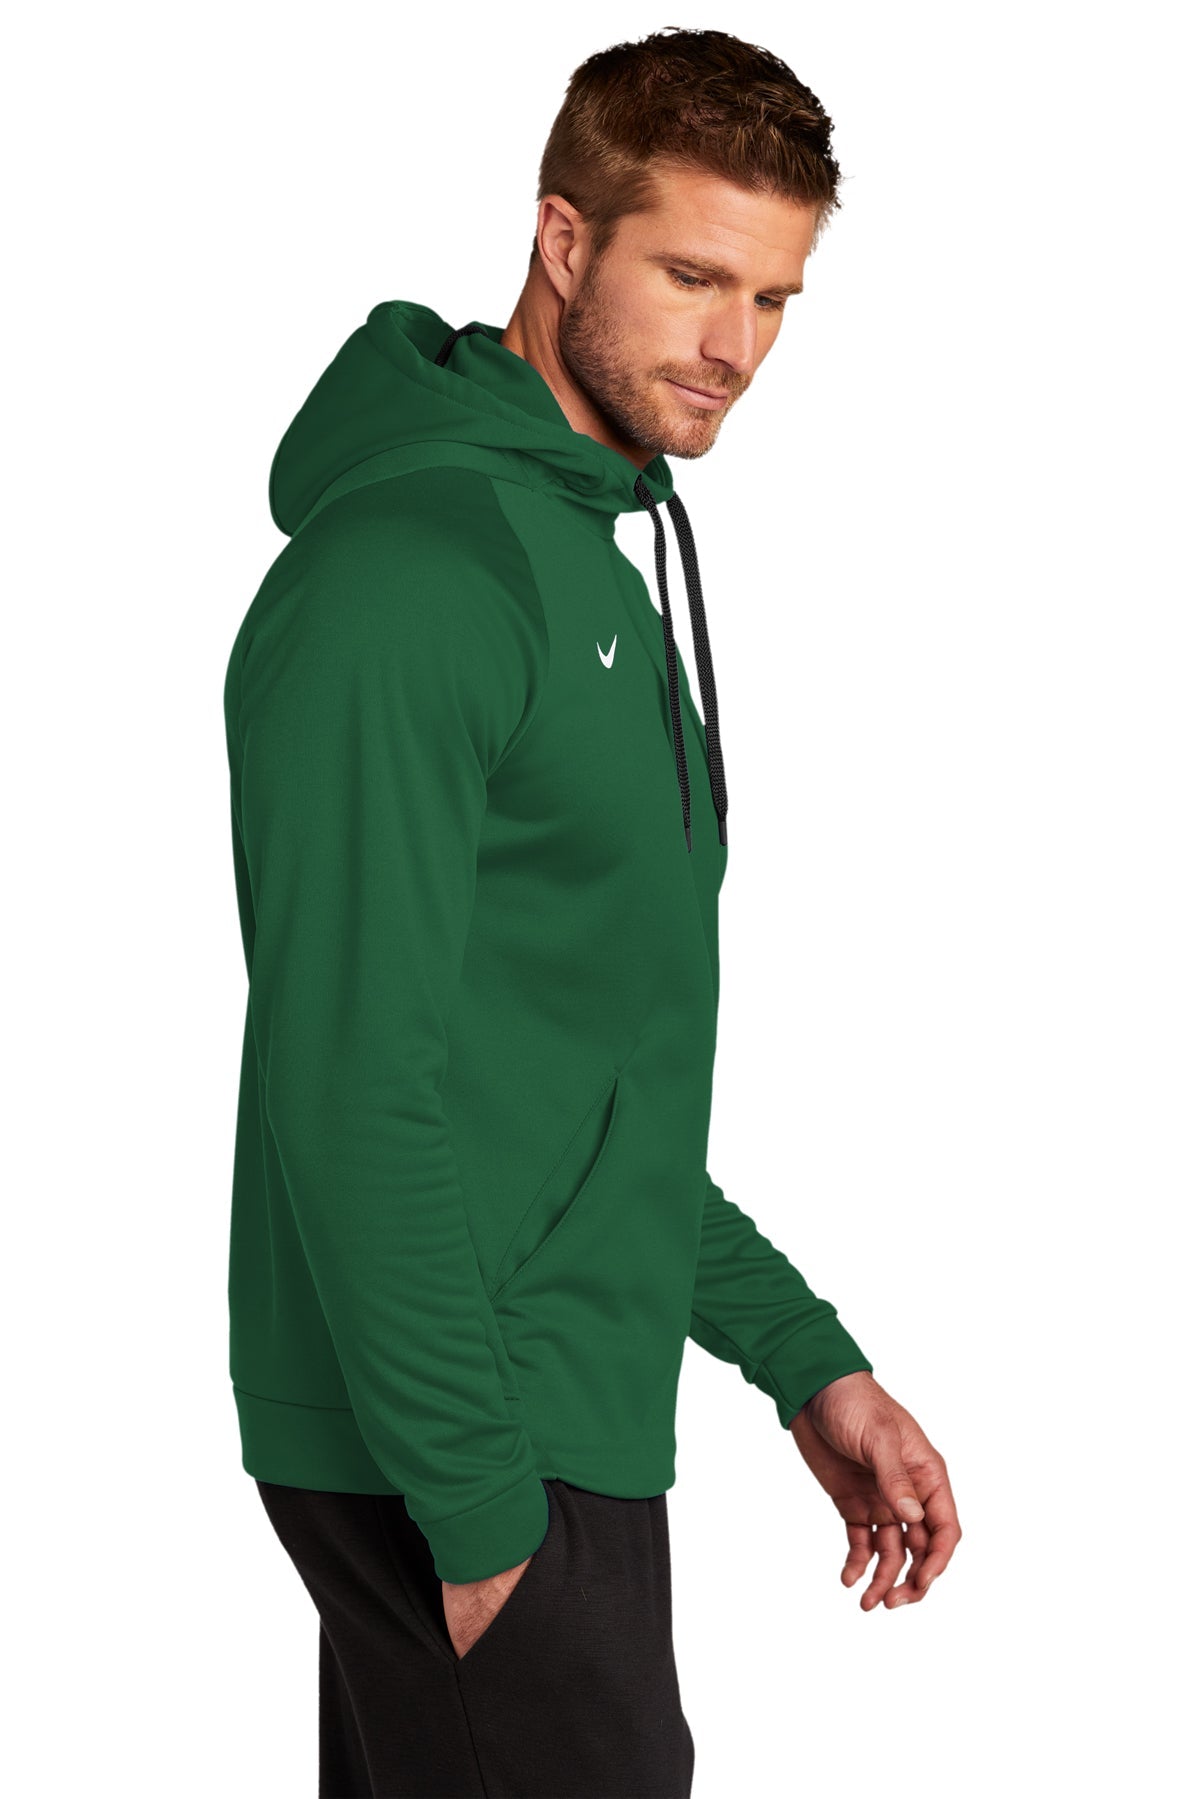 CN9473 Nike Therma-FIT Pullover Fleece Hoodie